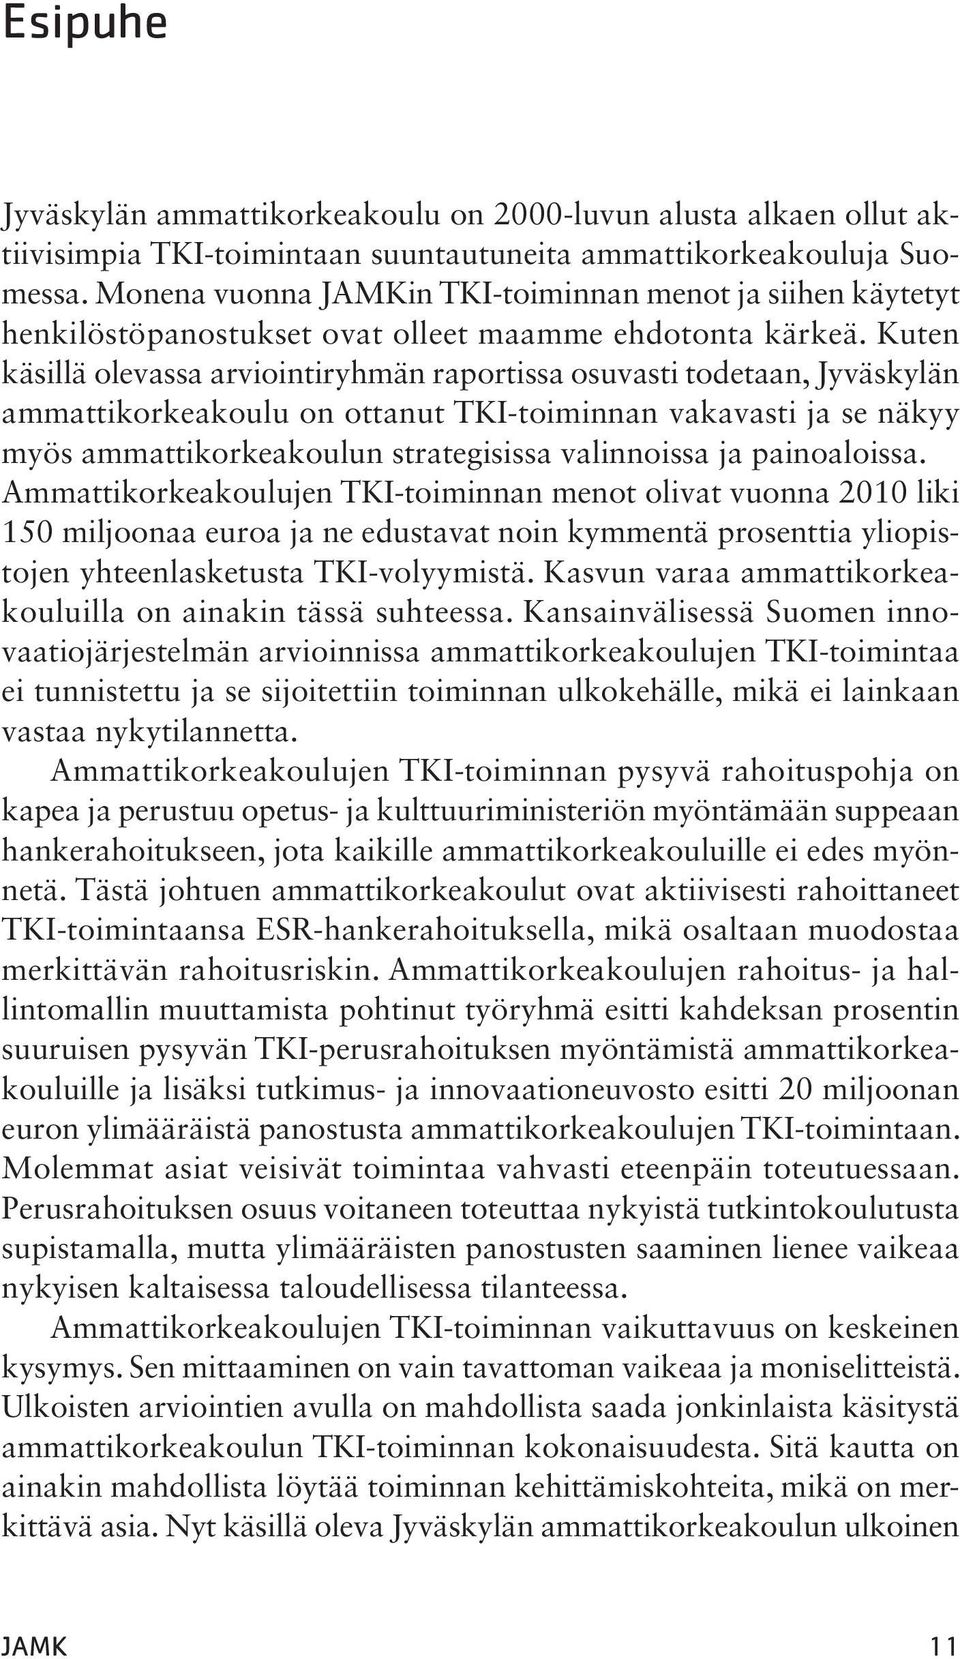 Kuten käsillä olevassa arviointiryhmän raportissa osuvasti todetaan, Jyväskylän ammattikorkeakoulu on ottanut TKI-toiminnan vakavasti ja se näkyy myös ammattikorkeakoulun strategisissa valinnoissa ja